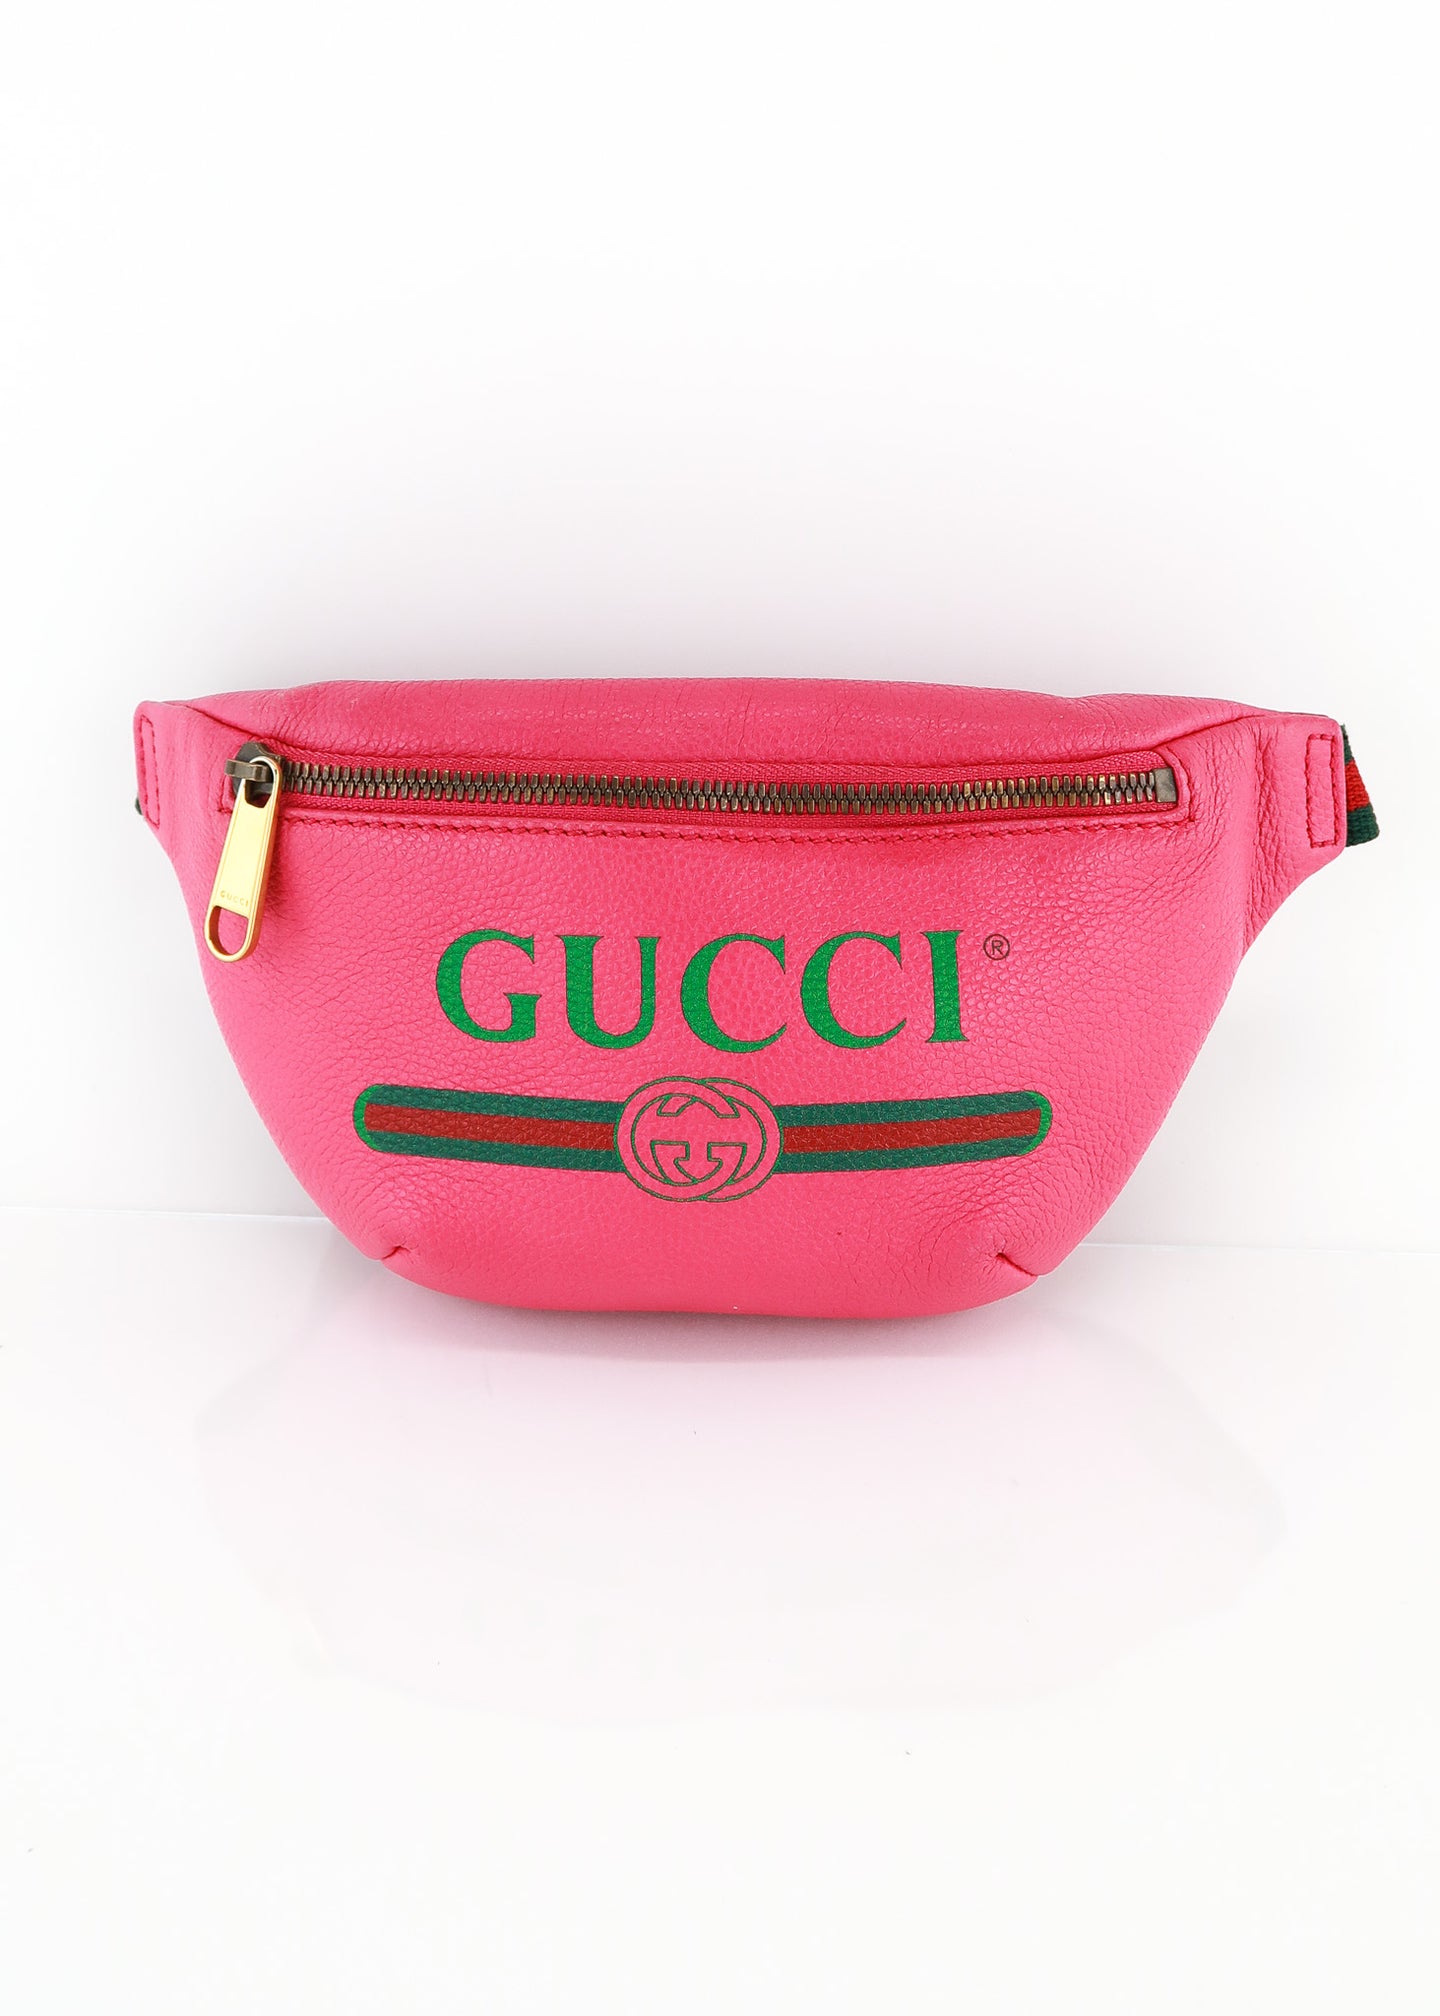 Gucci, Bags, Gucci Belt Bag Hot Pink